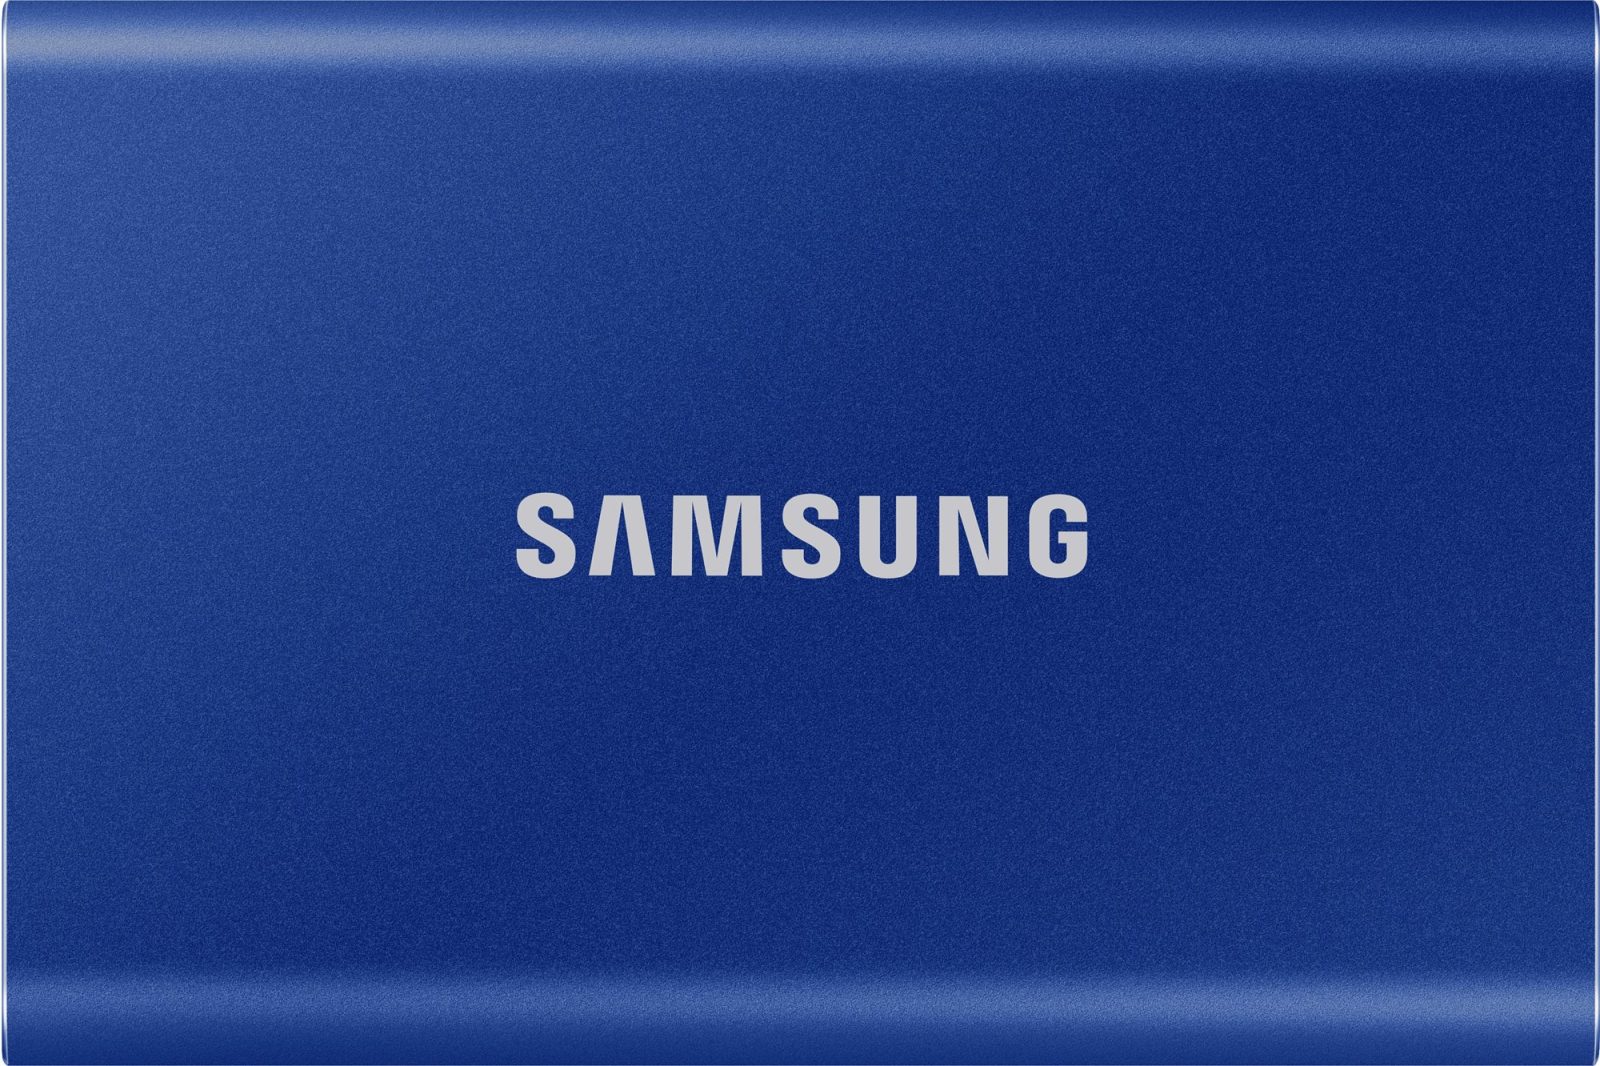 Külső merevlemez Samsung Portable SSD T7 1TB kék